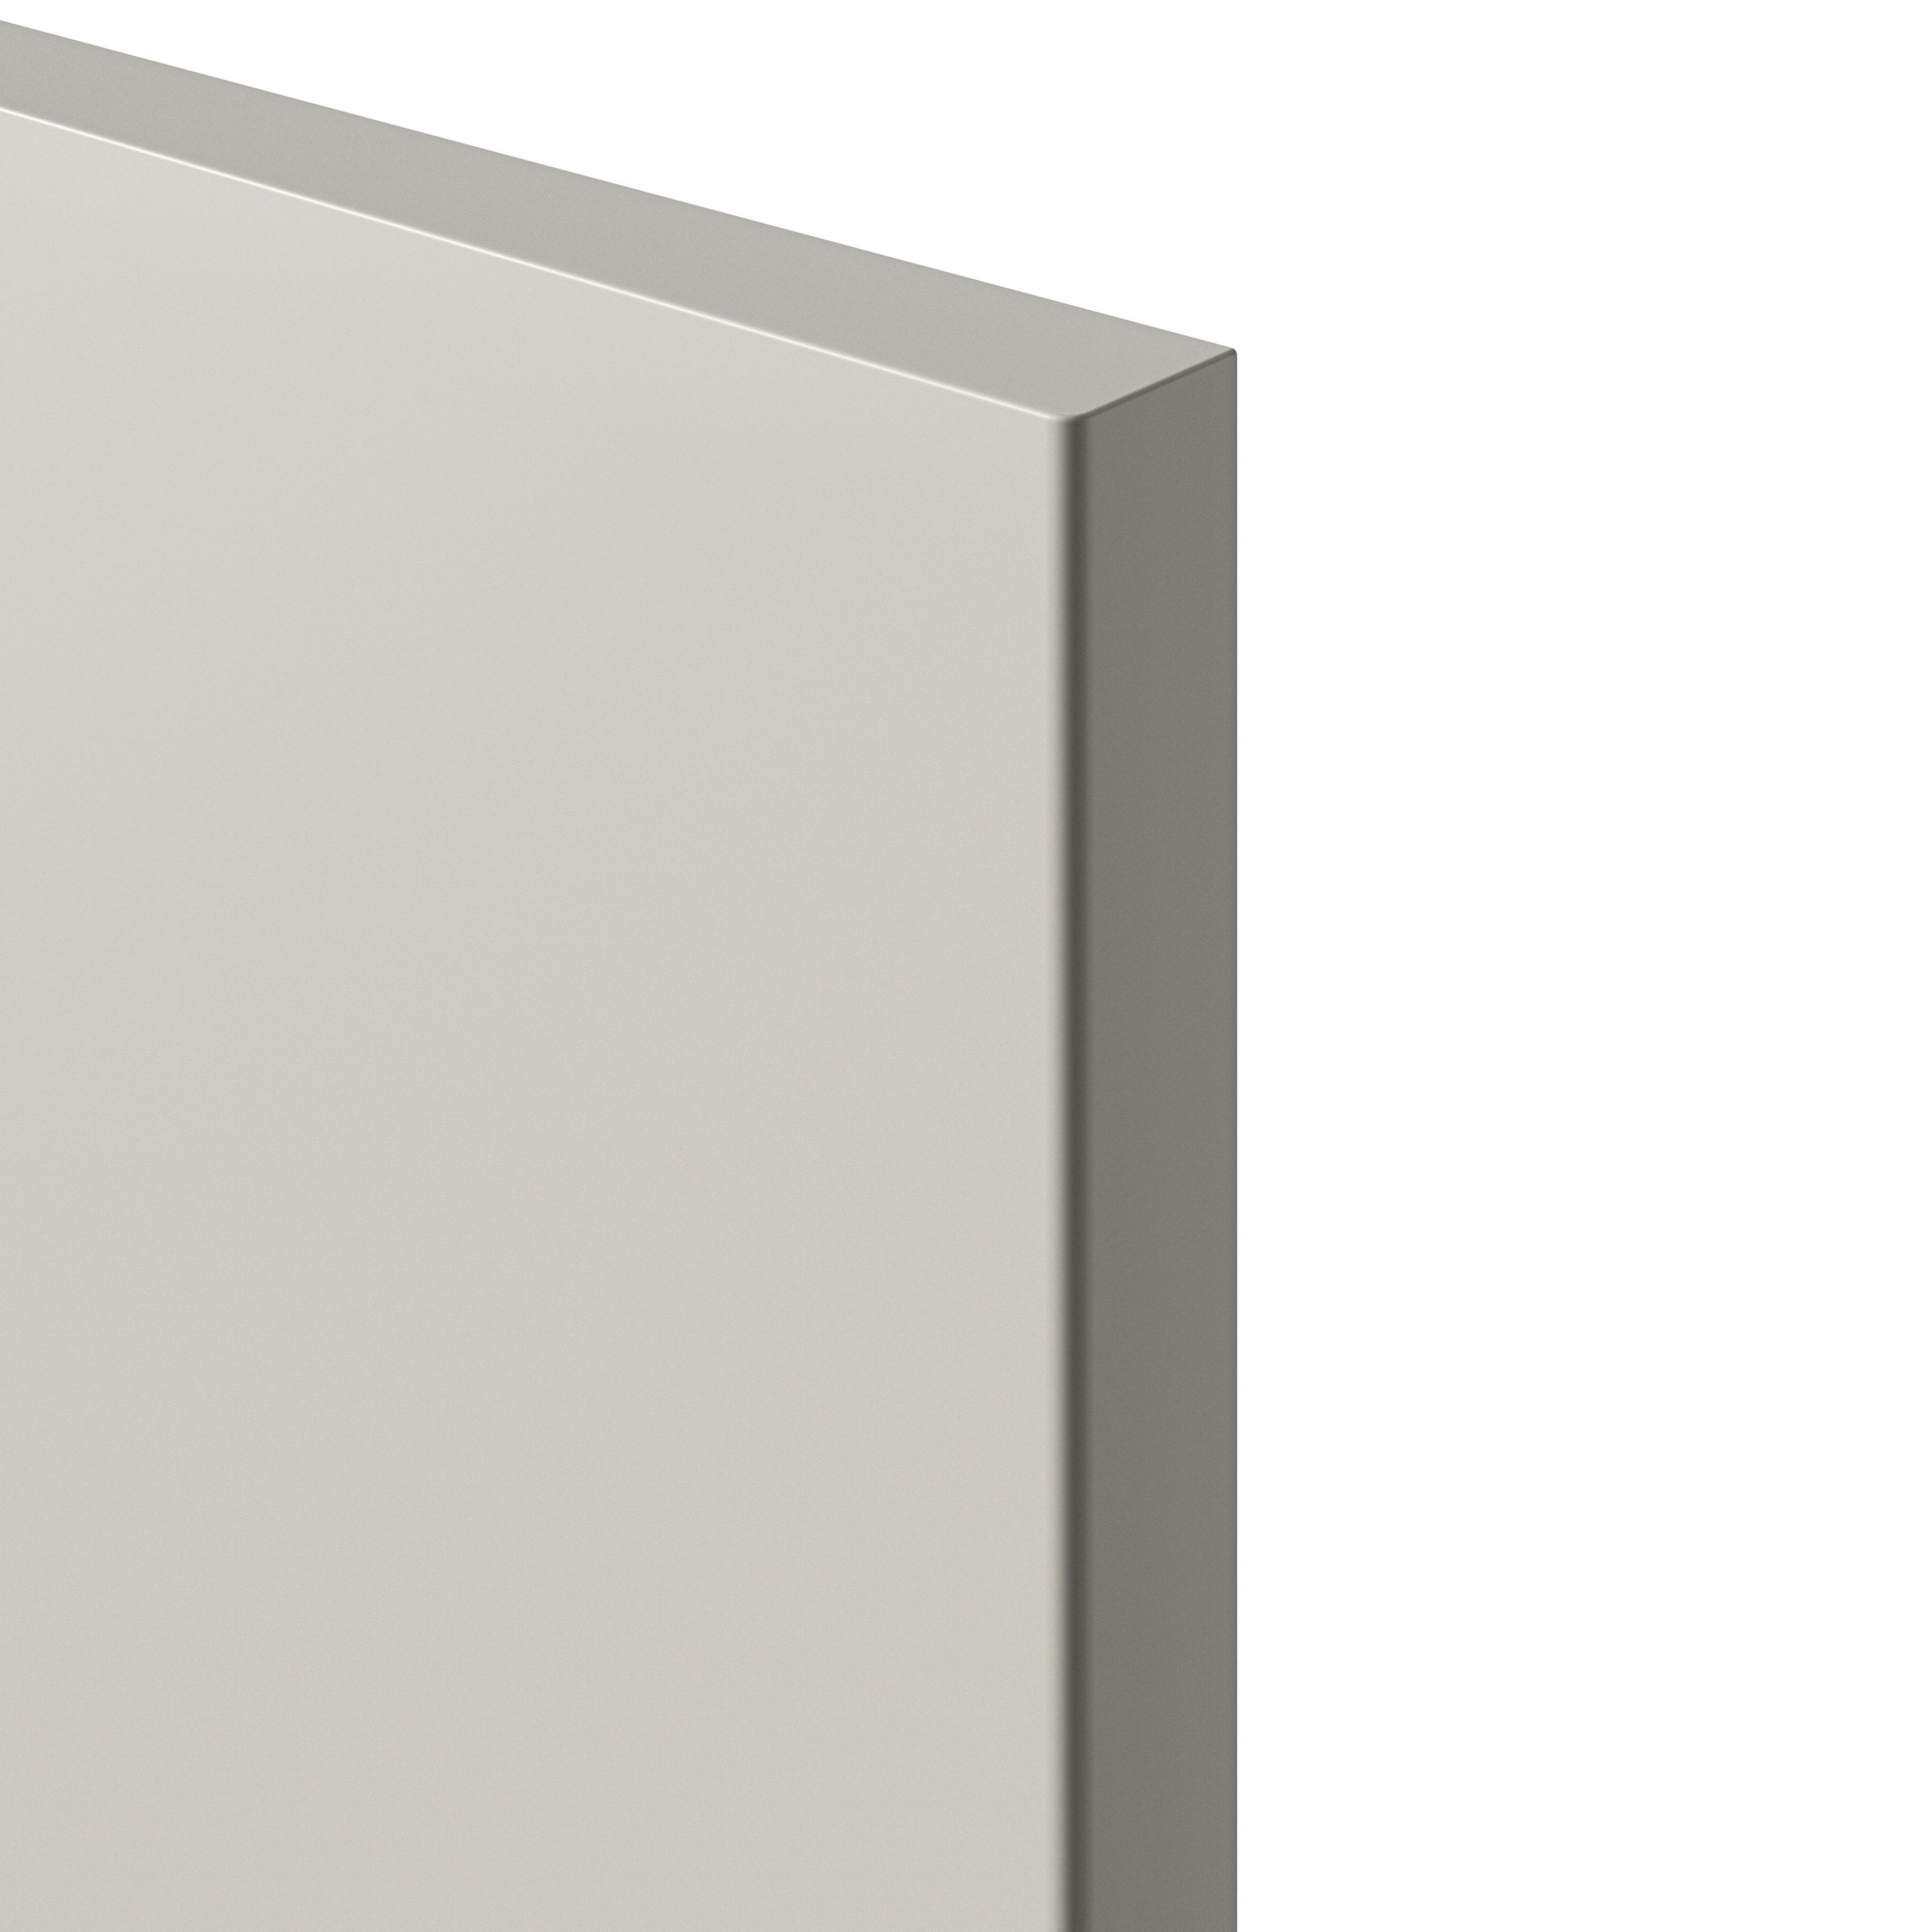 GoodHome Stevia Matt sandstone slab Tall appliance Cabinet door (W)600mm (H)806mm (T)18mm